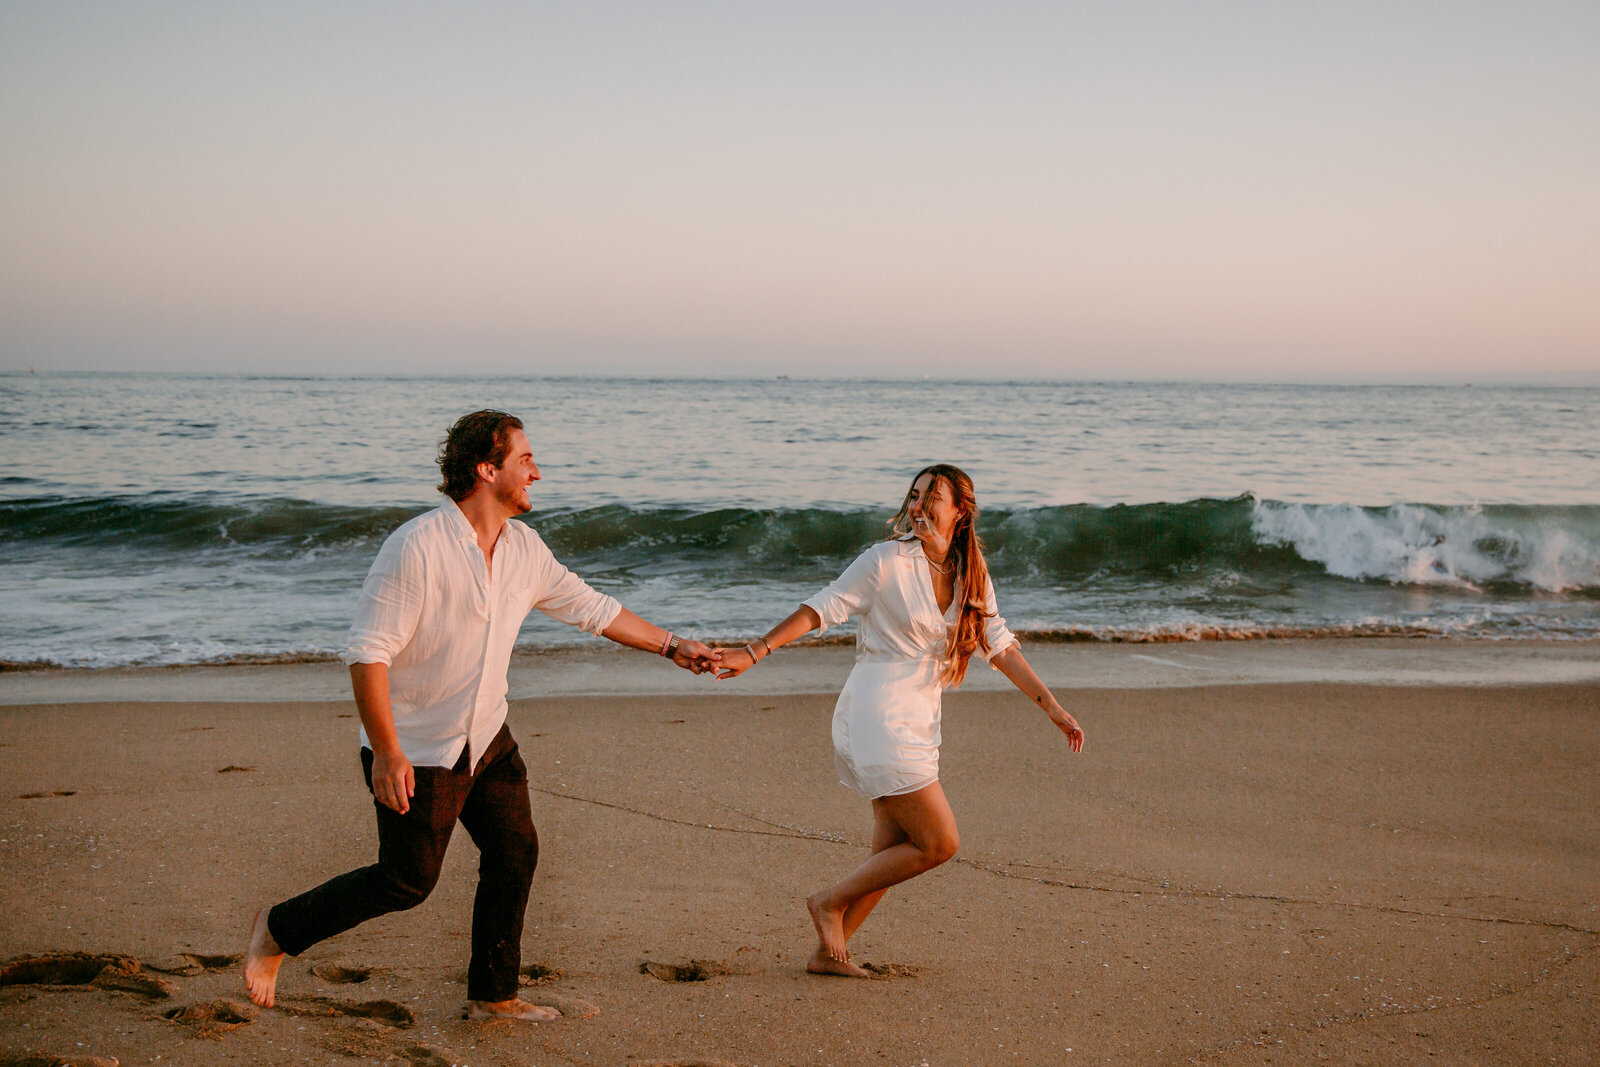 southern california beach elopement running on beach